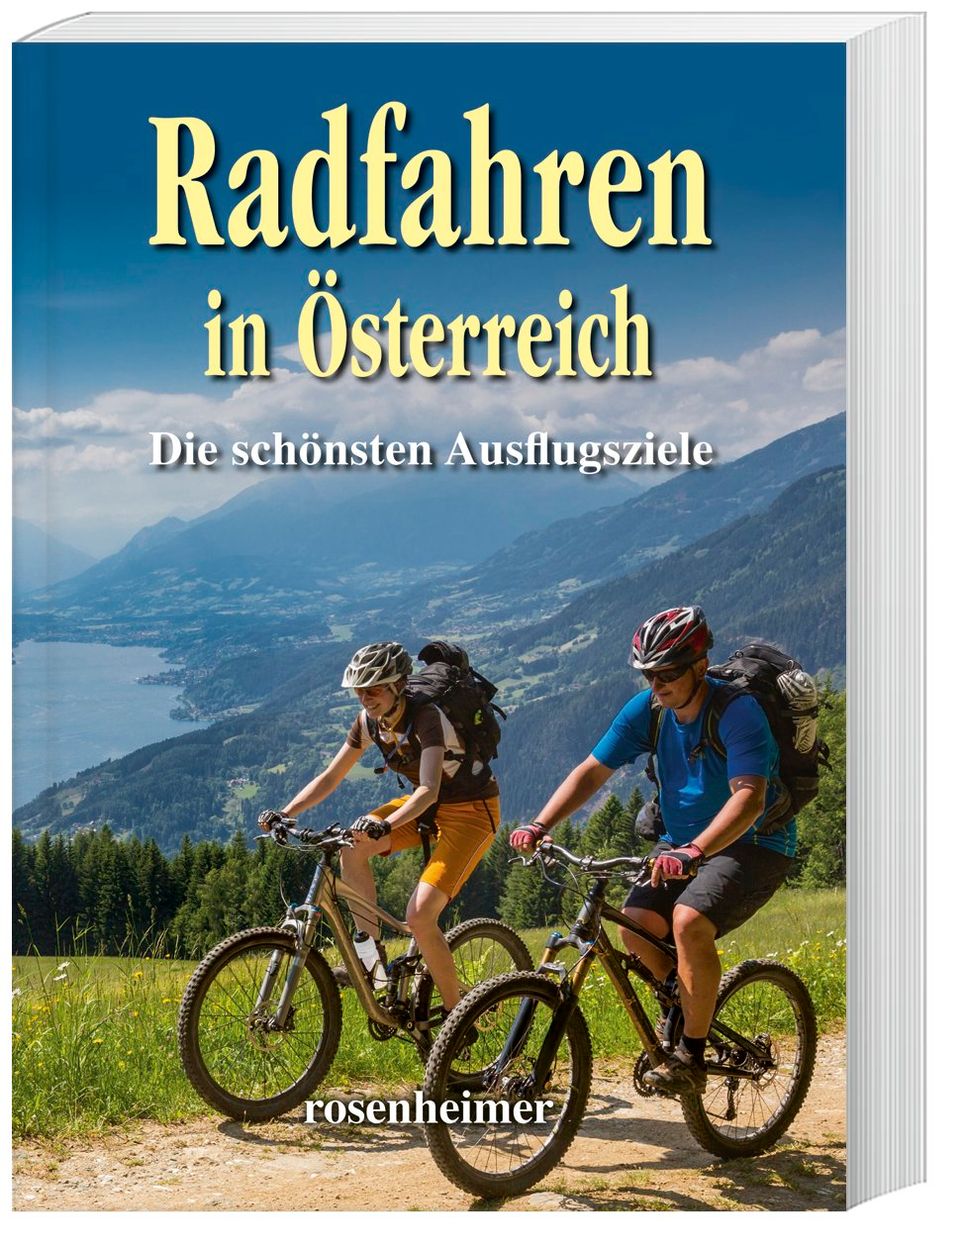 Radfahren in Österreich Buch versandkostenfrei bei Weltbild.at bestellen